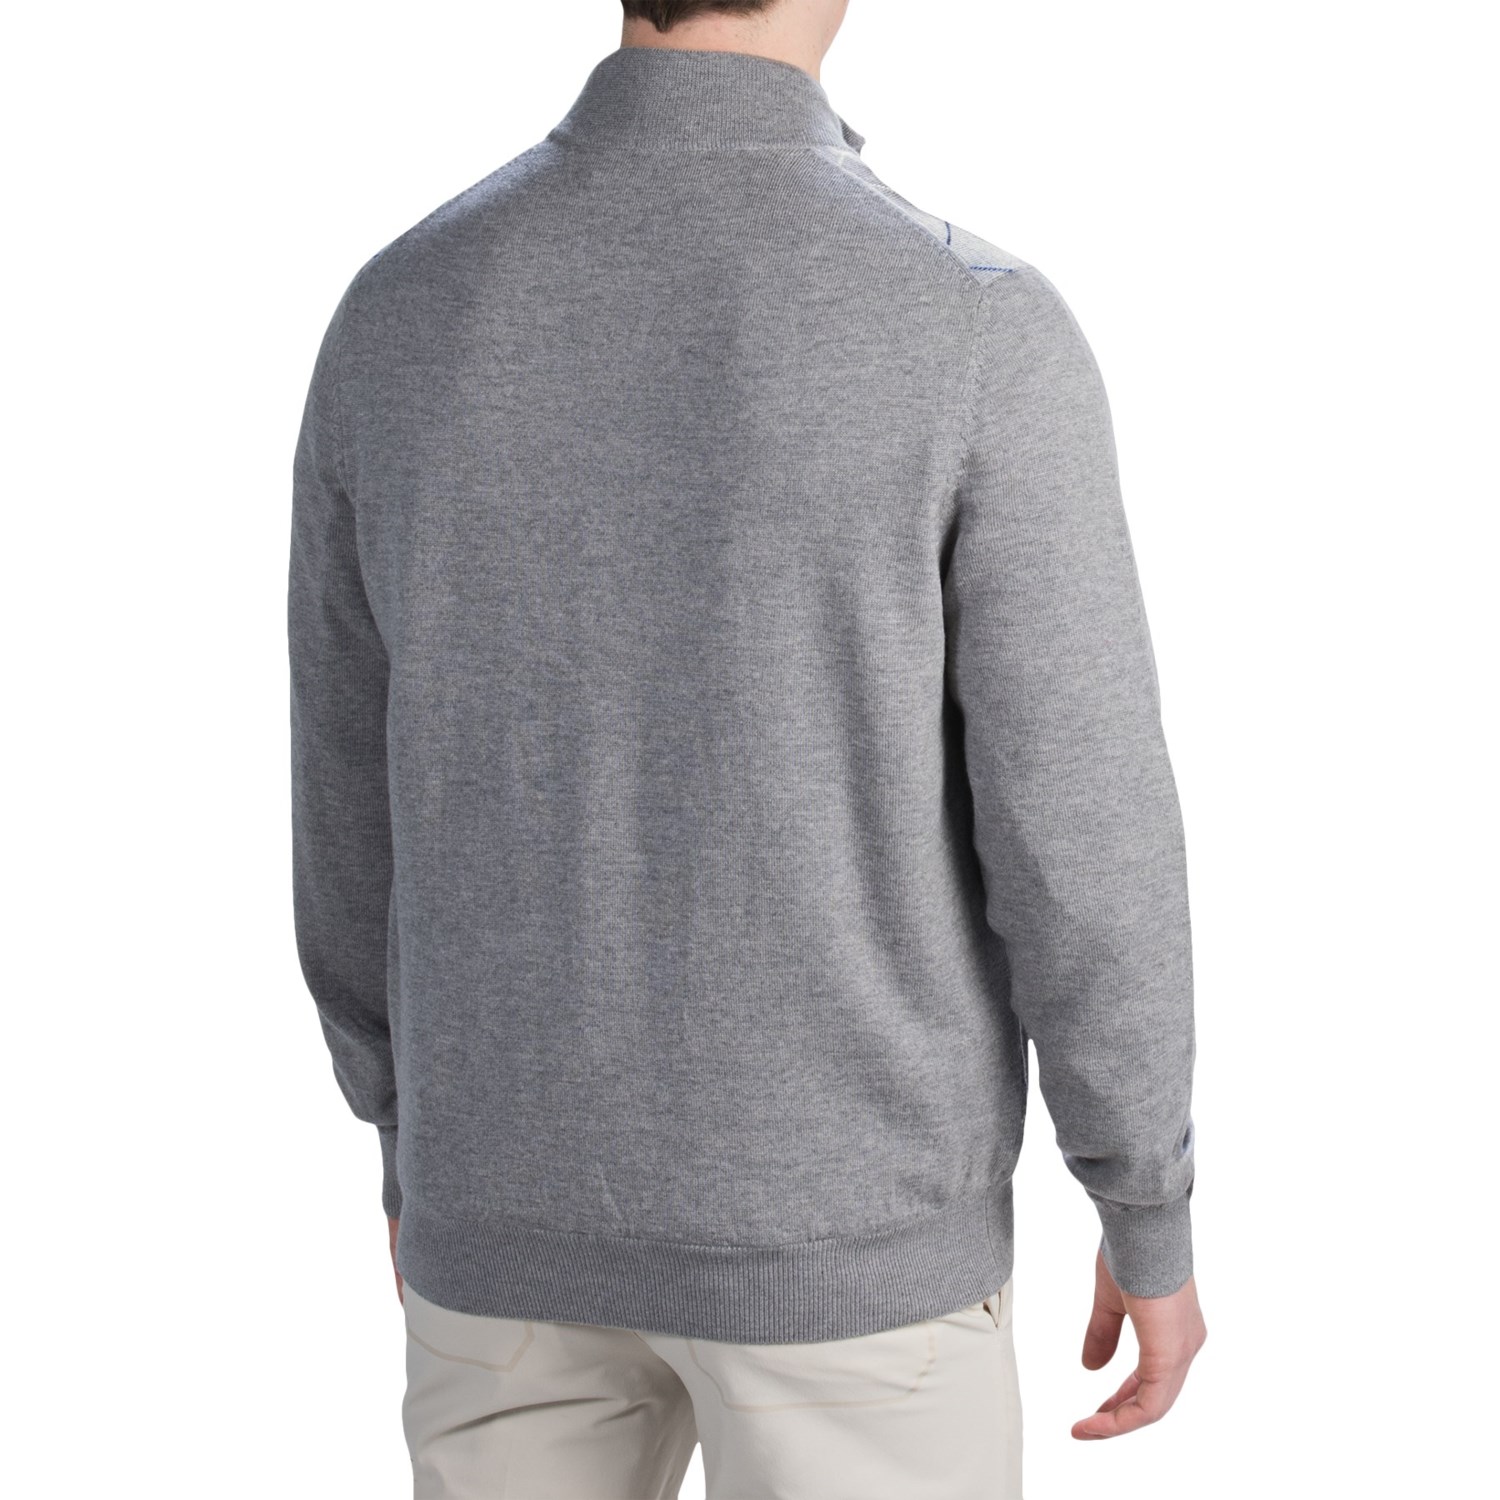 Fairway & Greene Merino Baruffa Sweater (For Men) - Save 75%